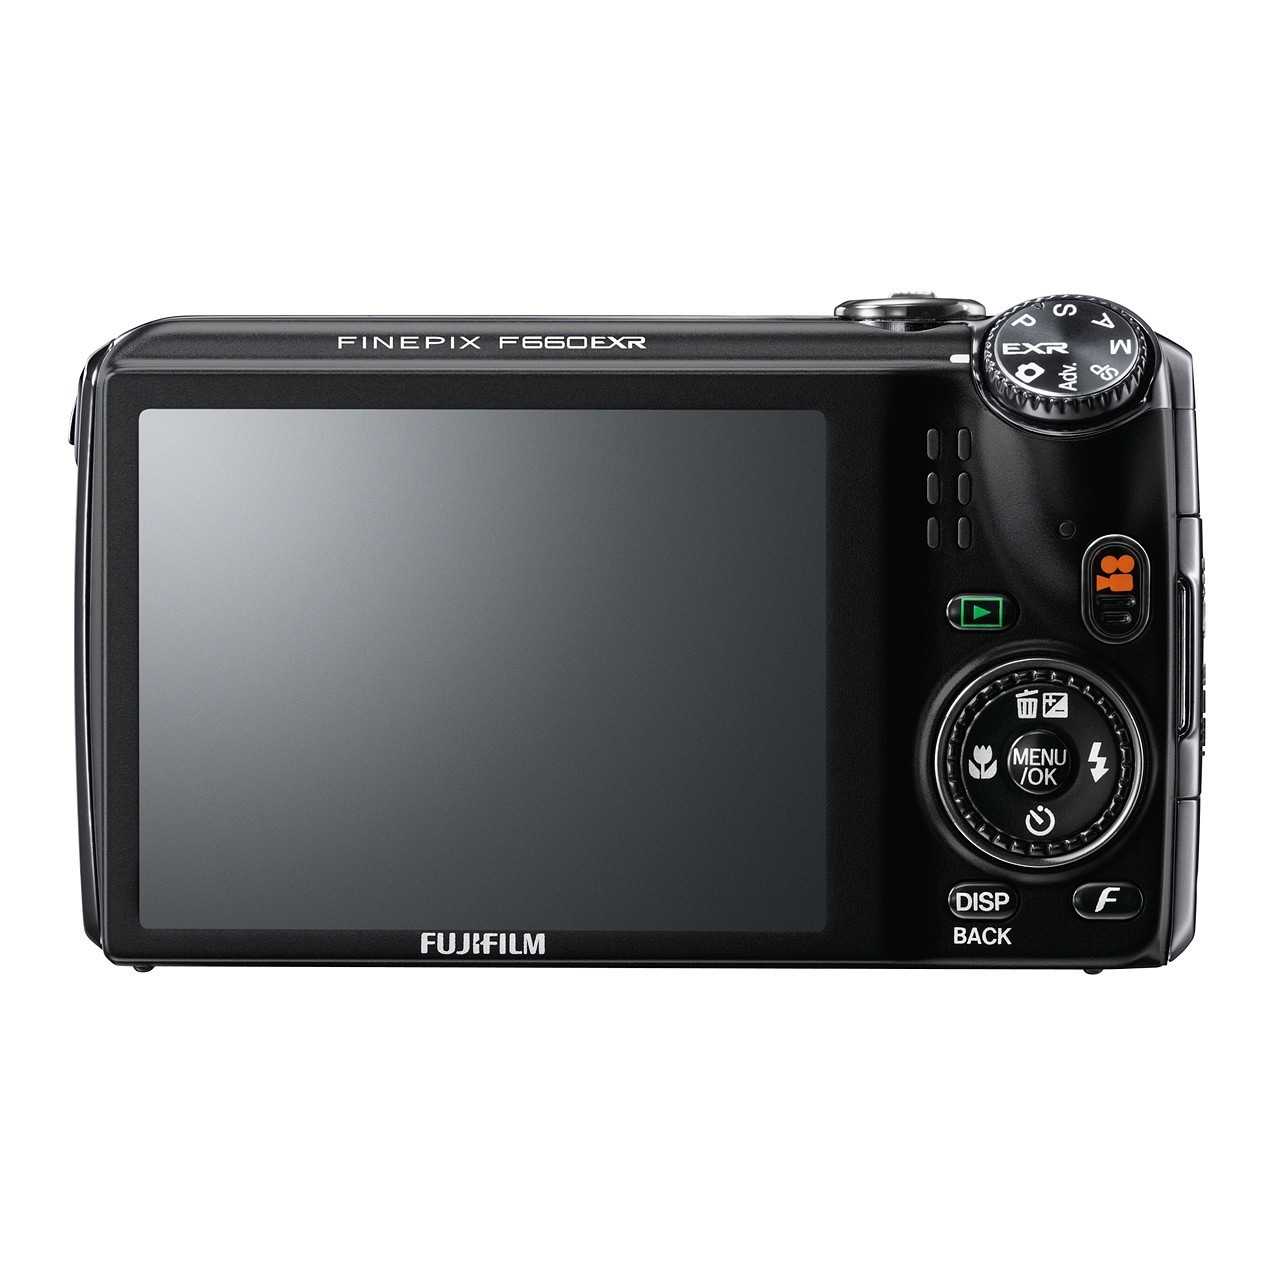 Fujifilm finepix f550exr